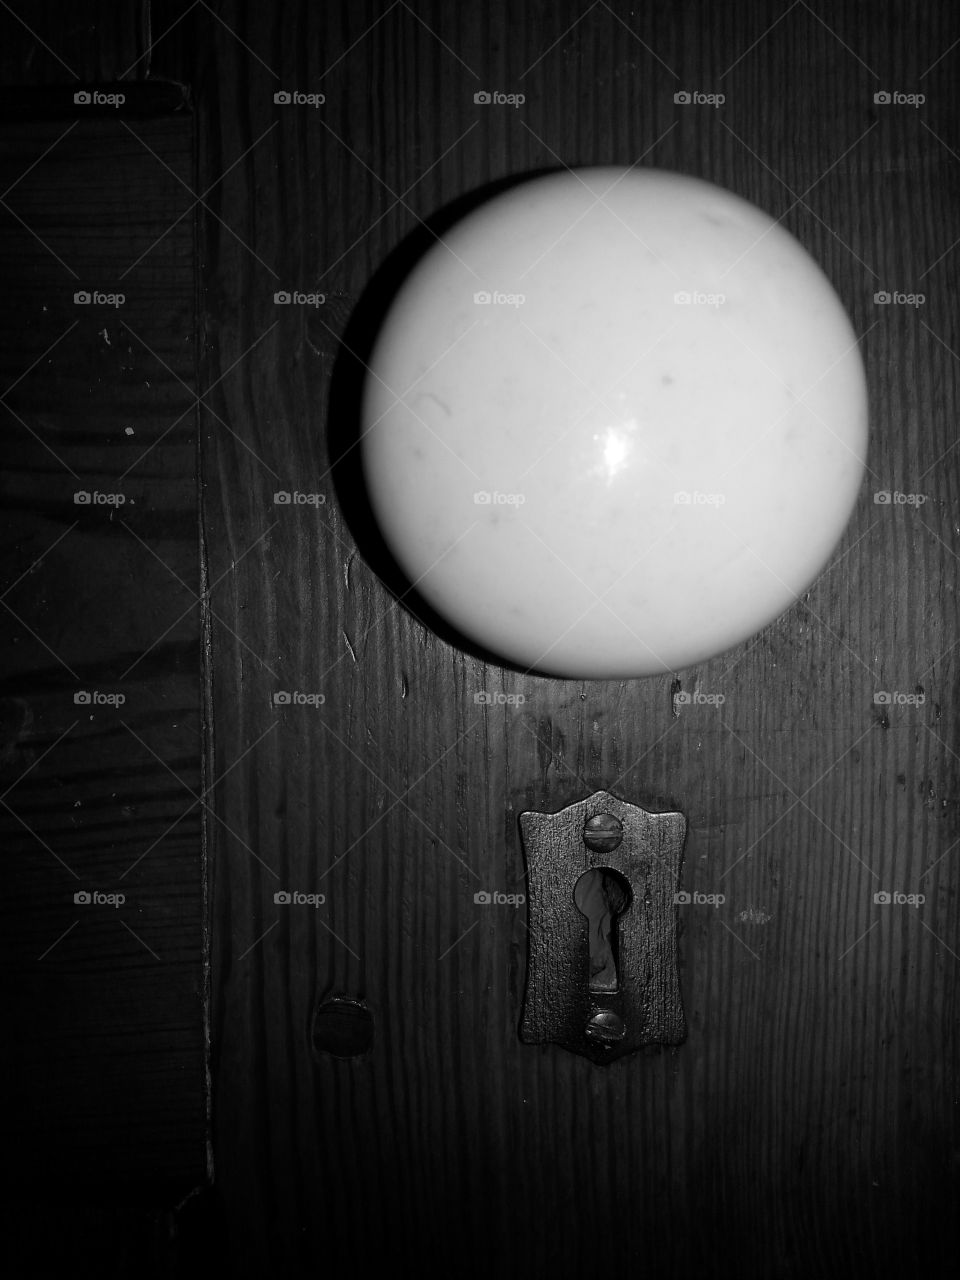 door knob & keyhole